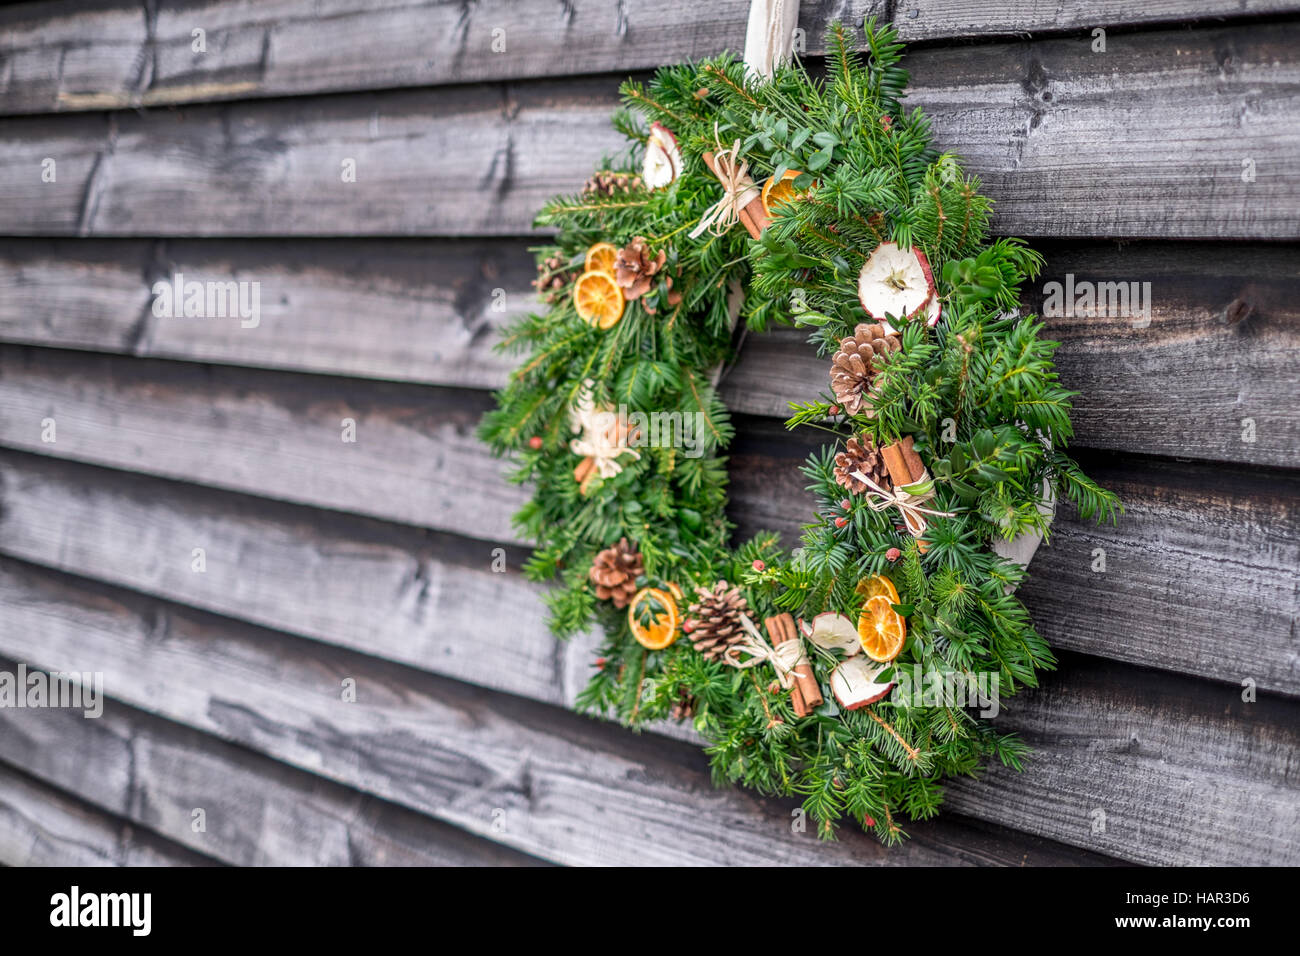 Corona de Navidad Rústica Madera verdor pine cone pinecone naranjas festiva decoración decoración felices vacaciones Foto de stock